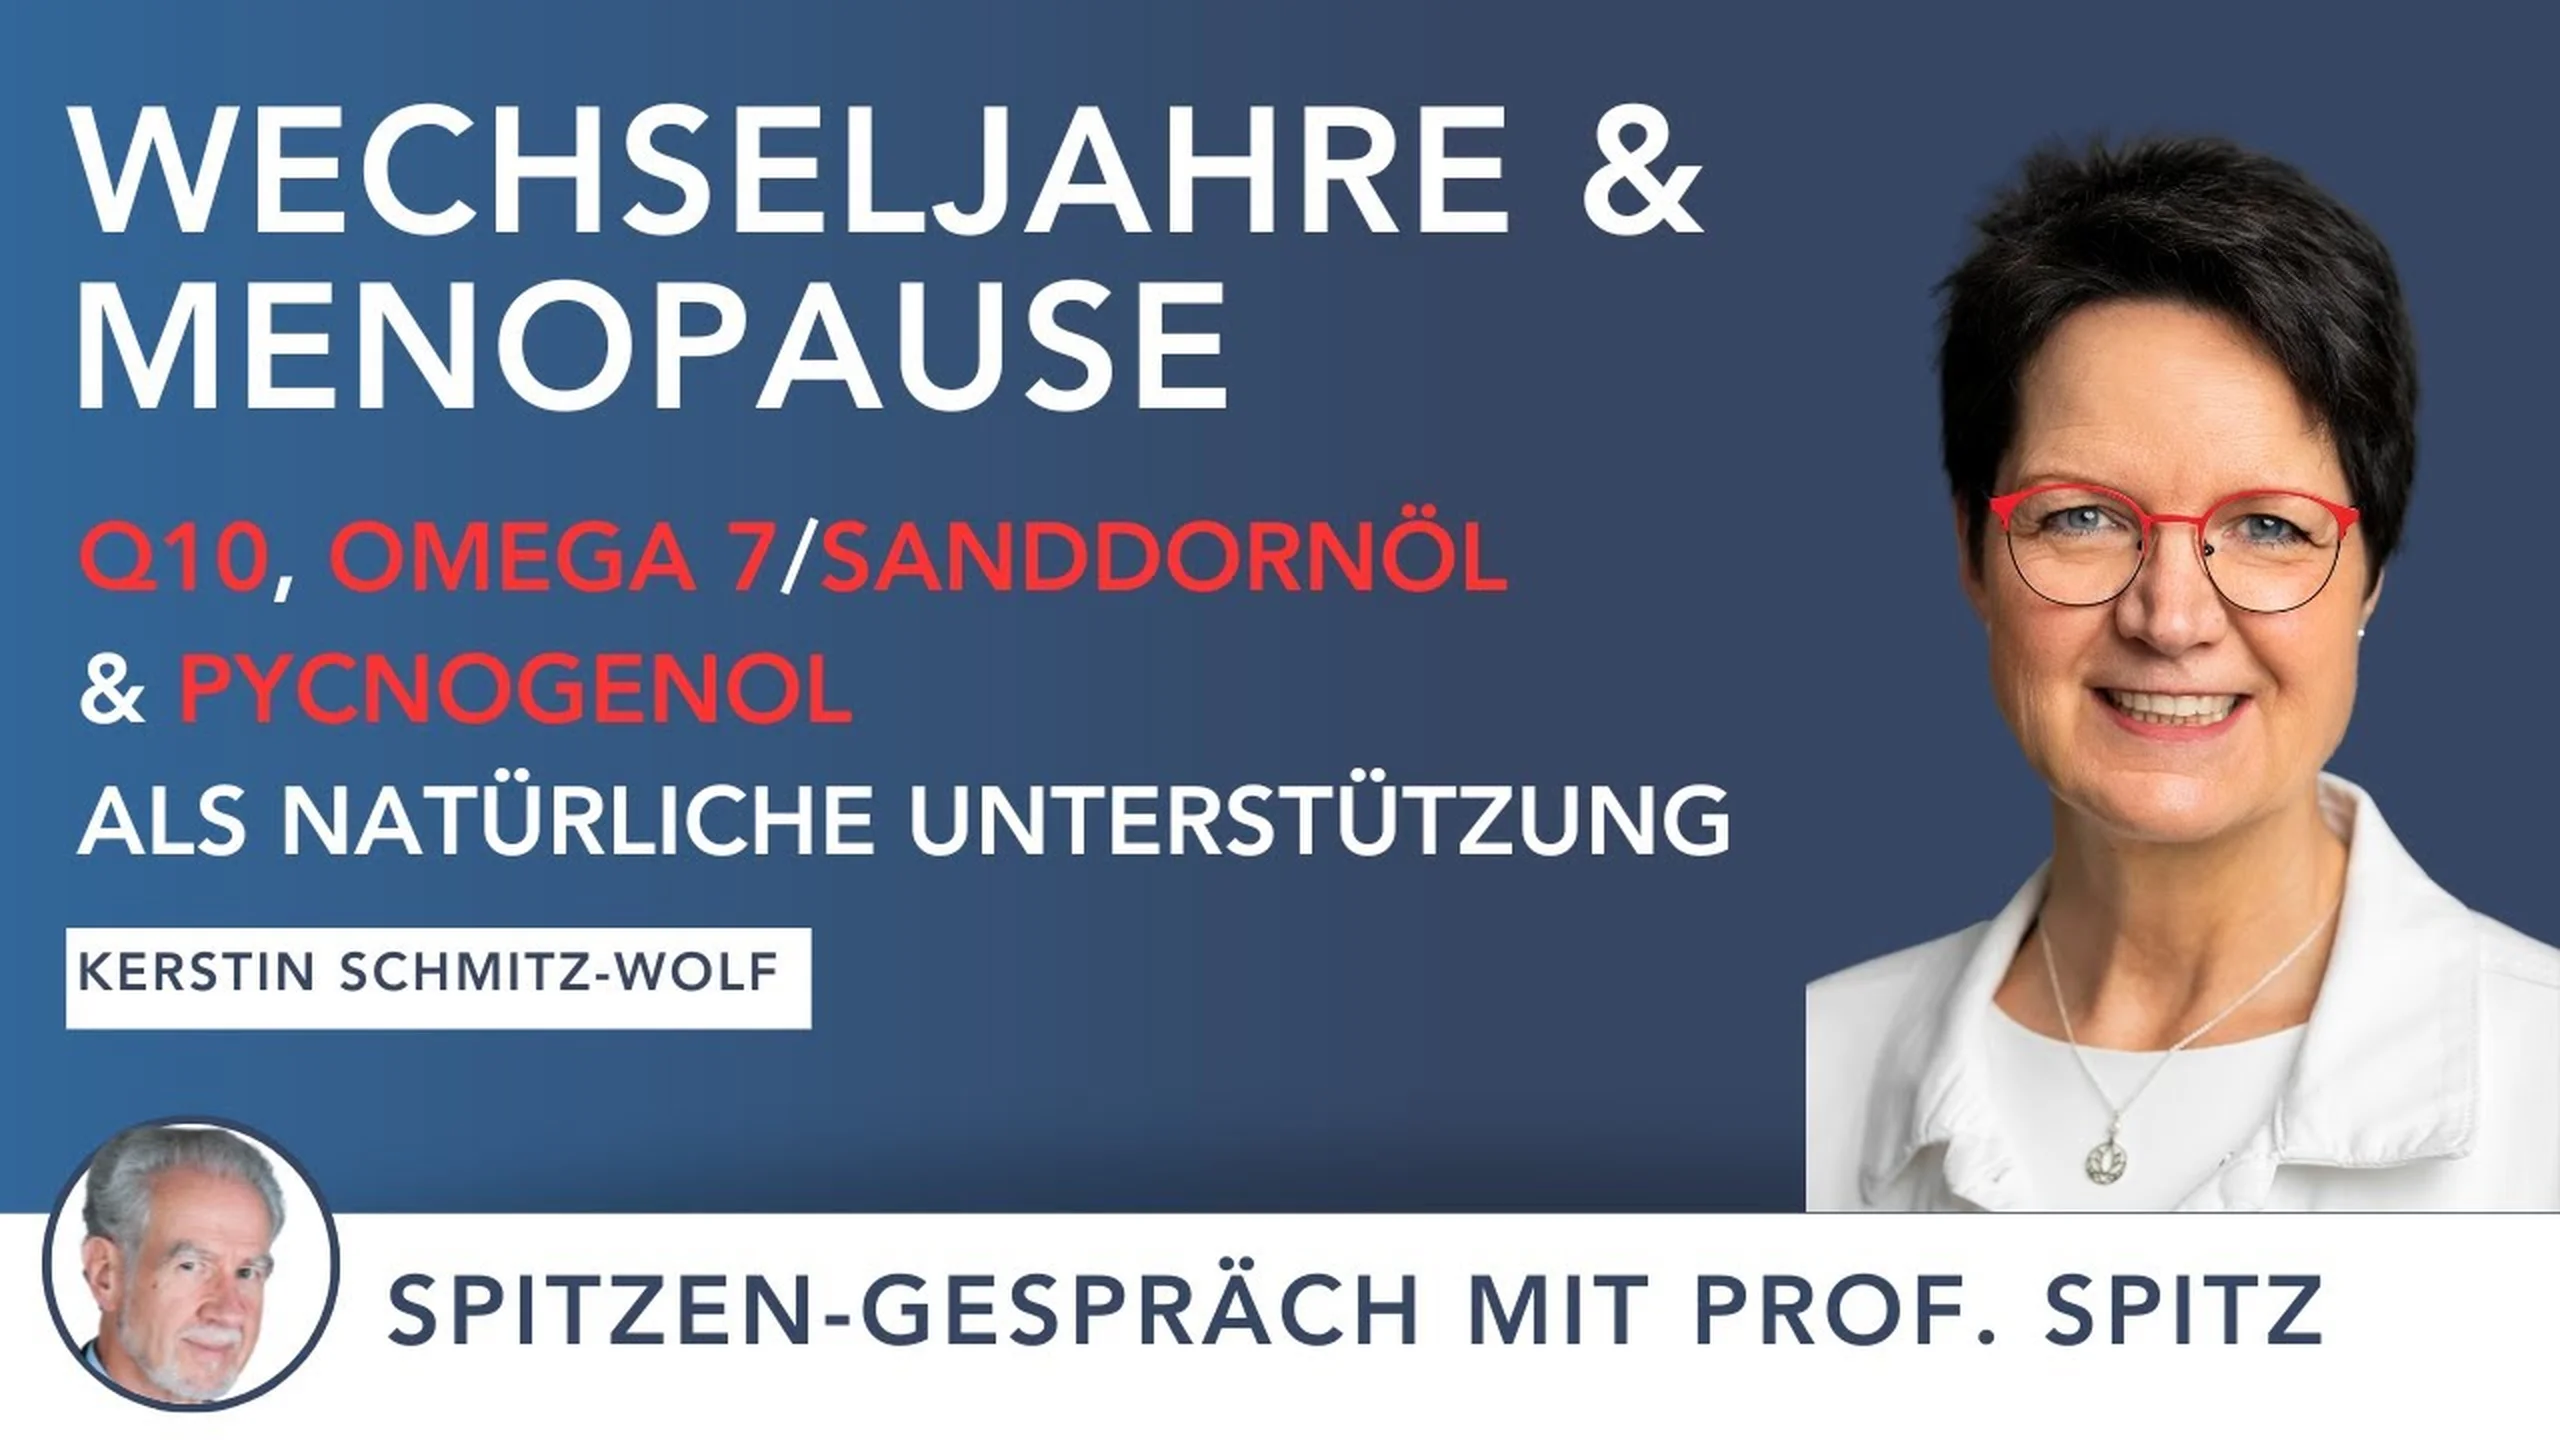 Menopause & Wechseljahre im Fokus: Symptome und Lösungsansätze mit Expertin Kerstin Schmitz-Wolf